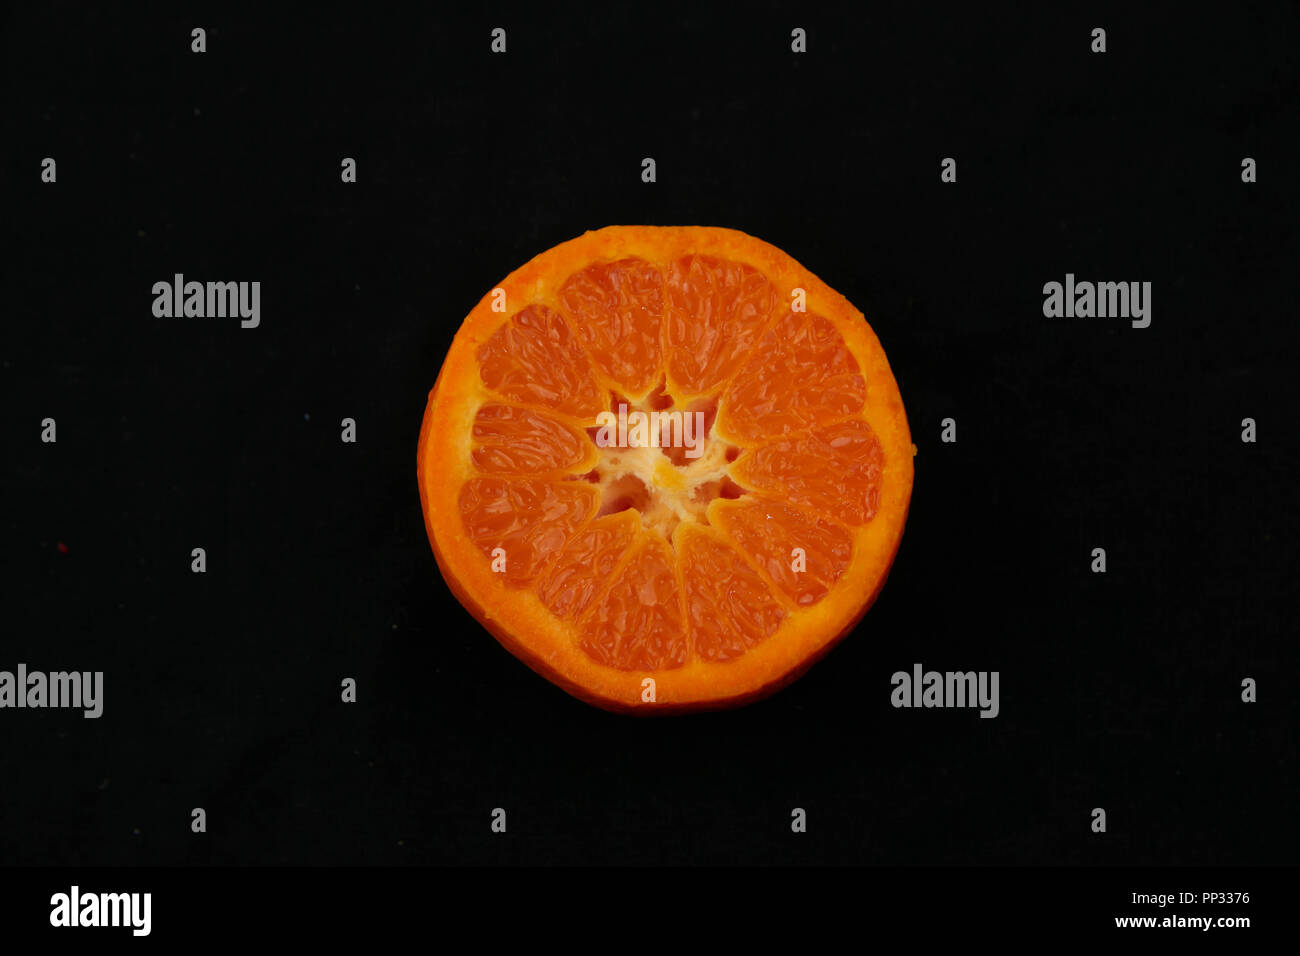 Bella testurizzata frutto arancione Foto Stock